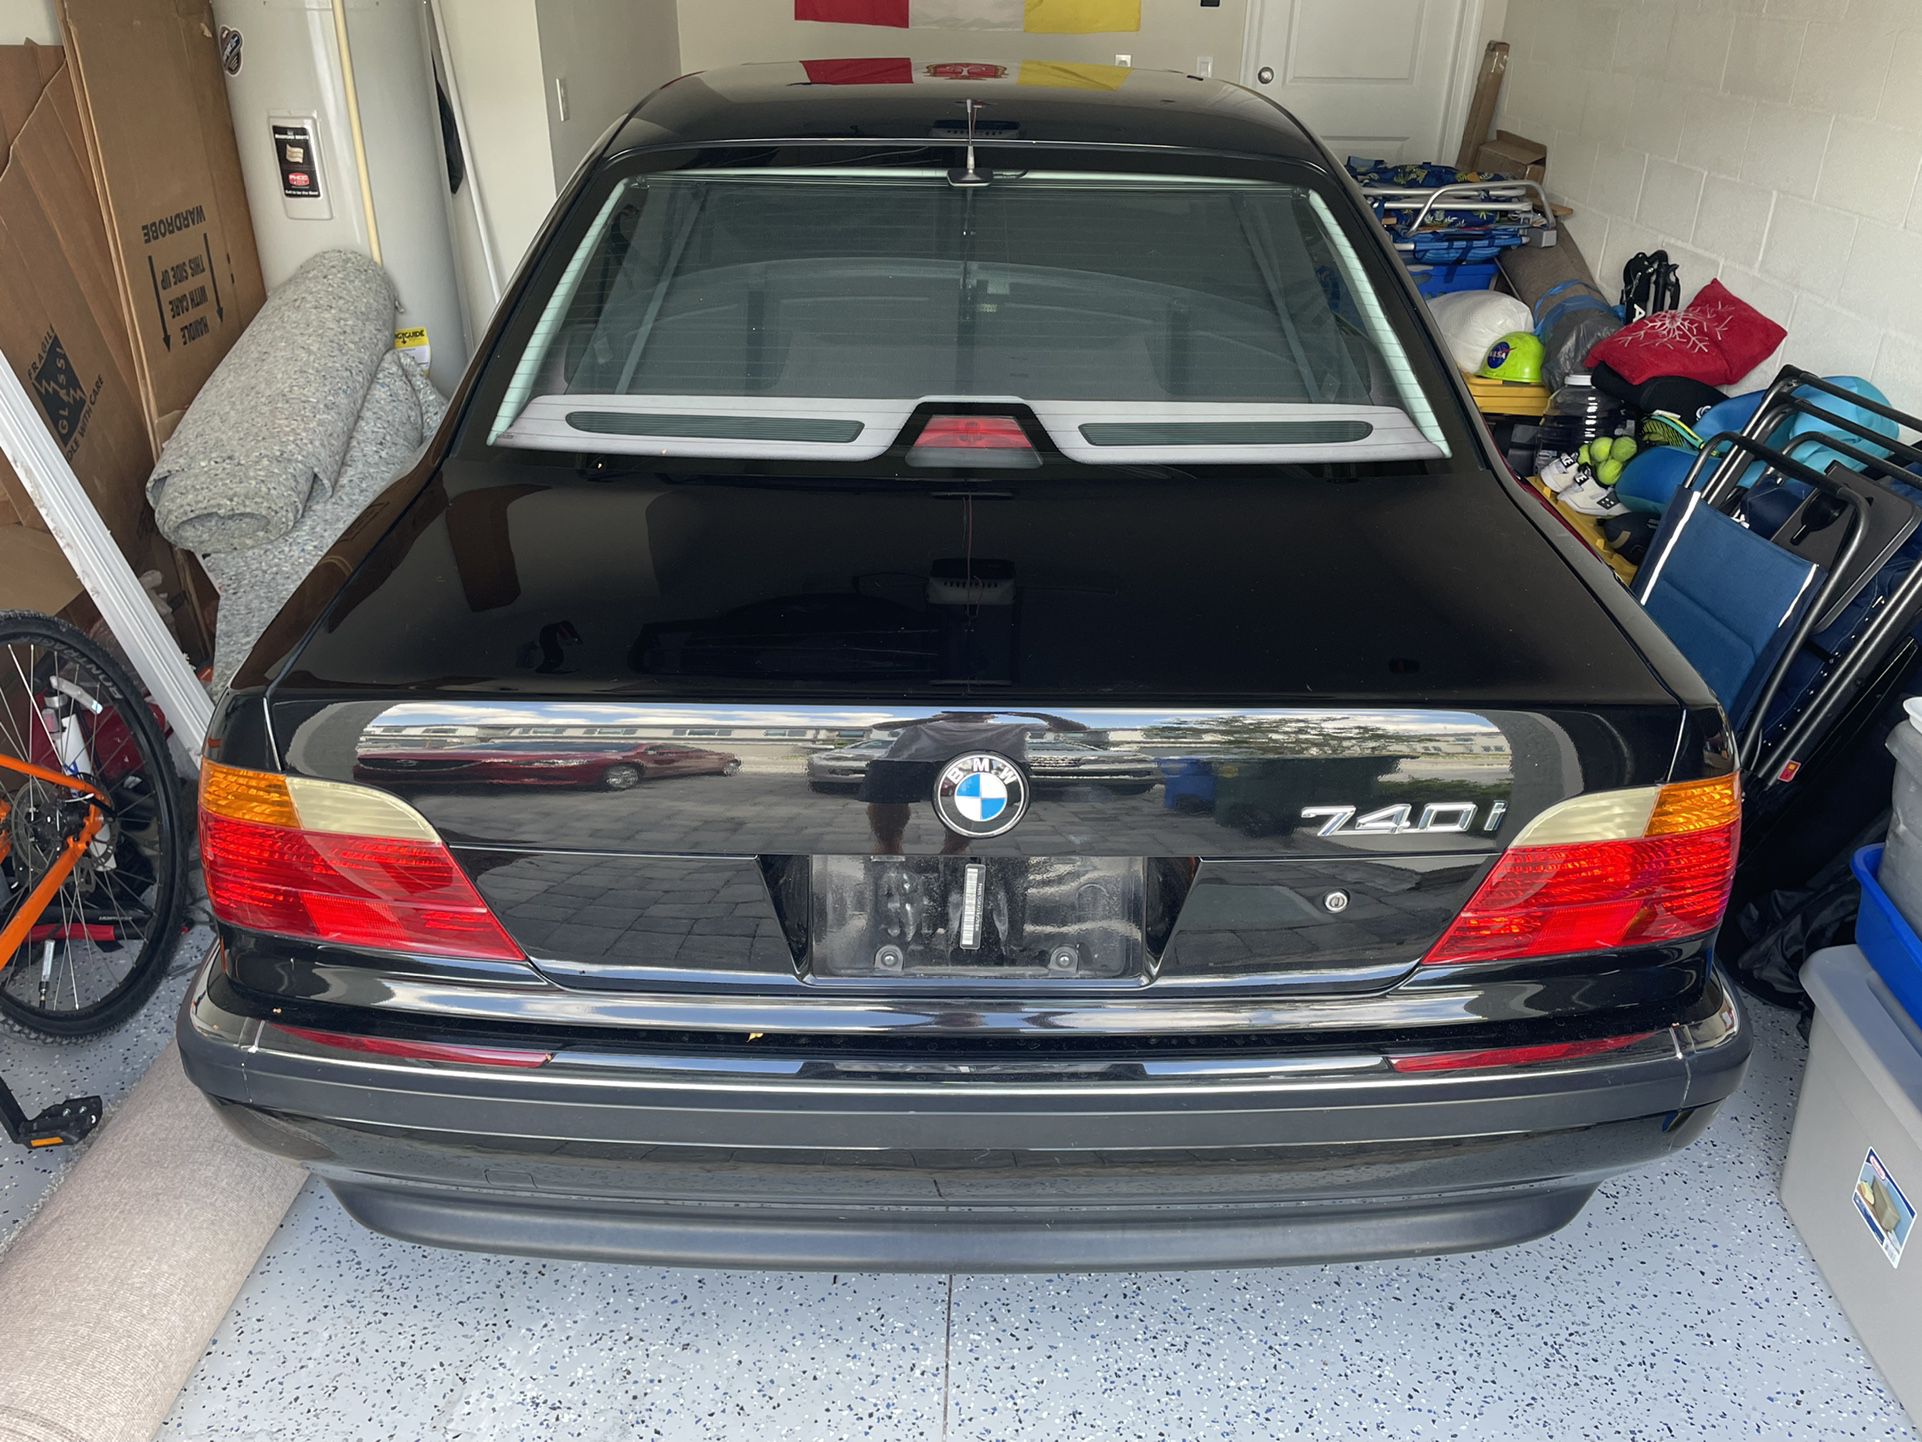 1998 BMW 740i